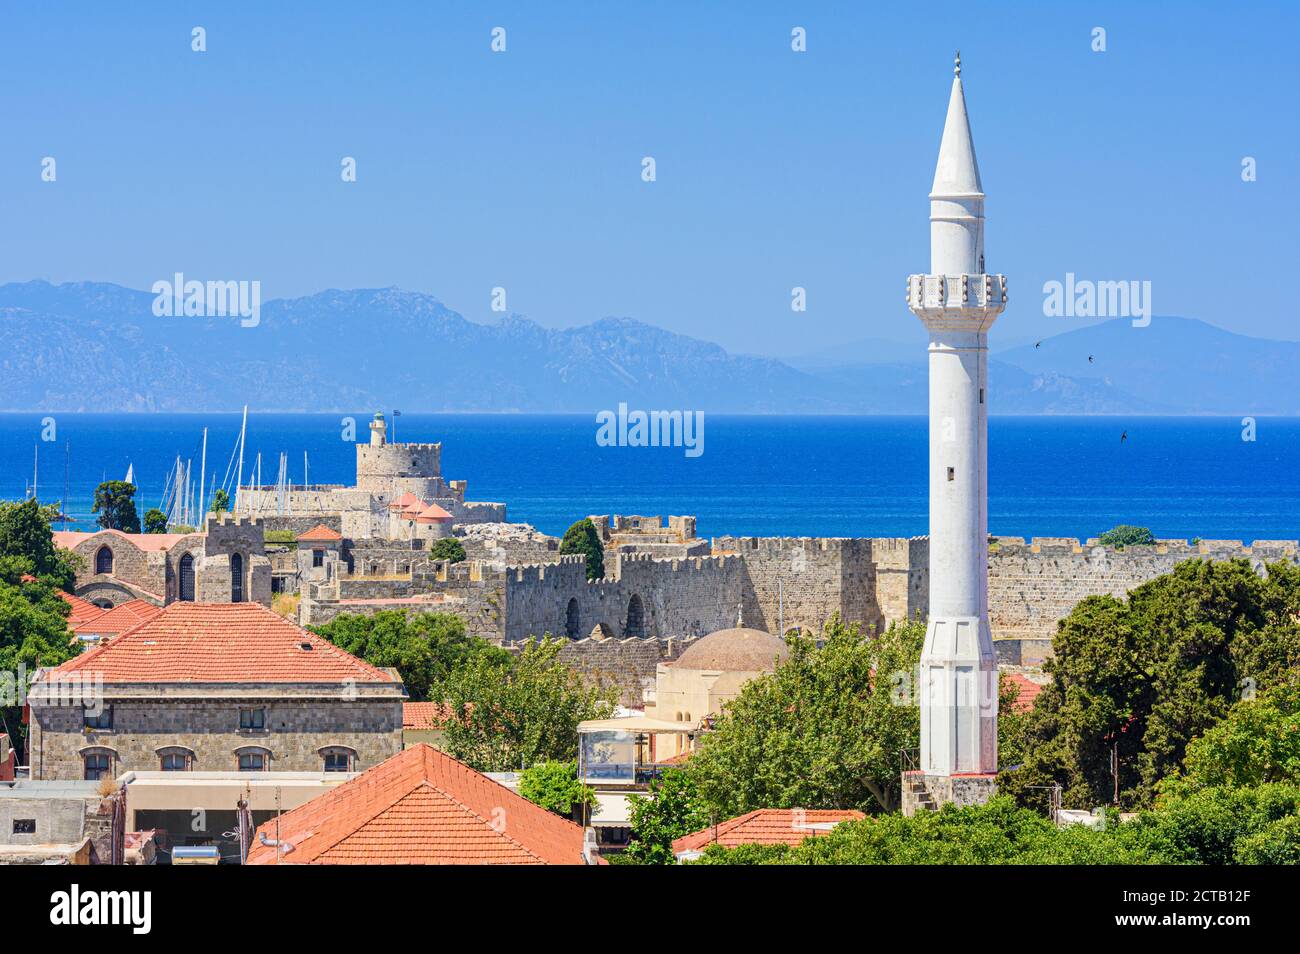 Vue sur la mer et les vieux murs médiévaux de la ville de Rhodes surplombé par le minaret de la mosquée Ibrahim Pasha à Rhodes, Grèce Banque D'Images